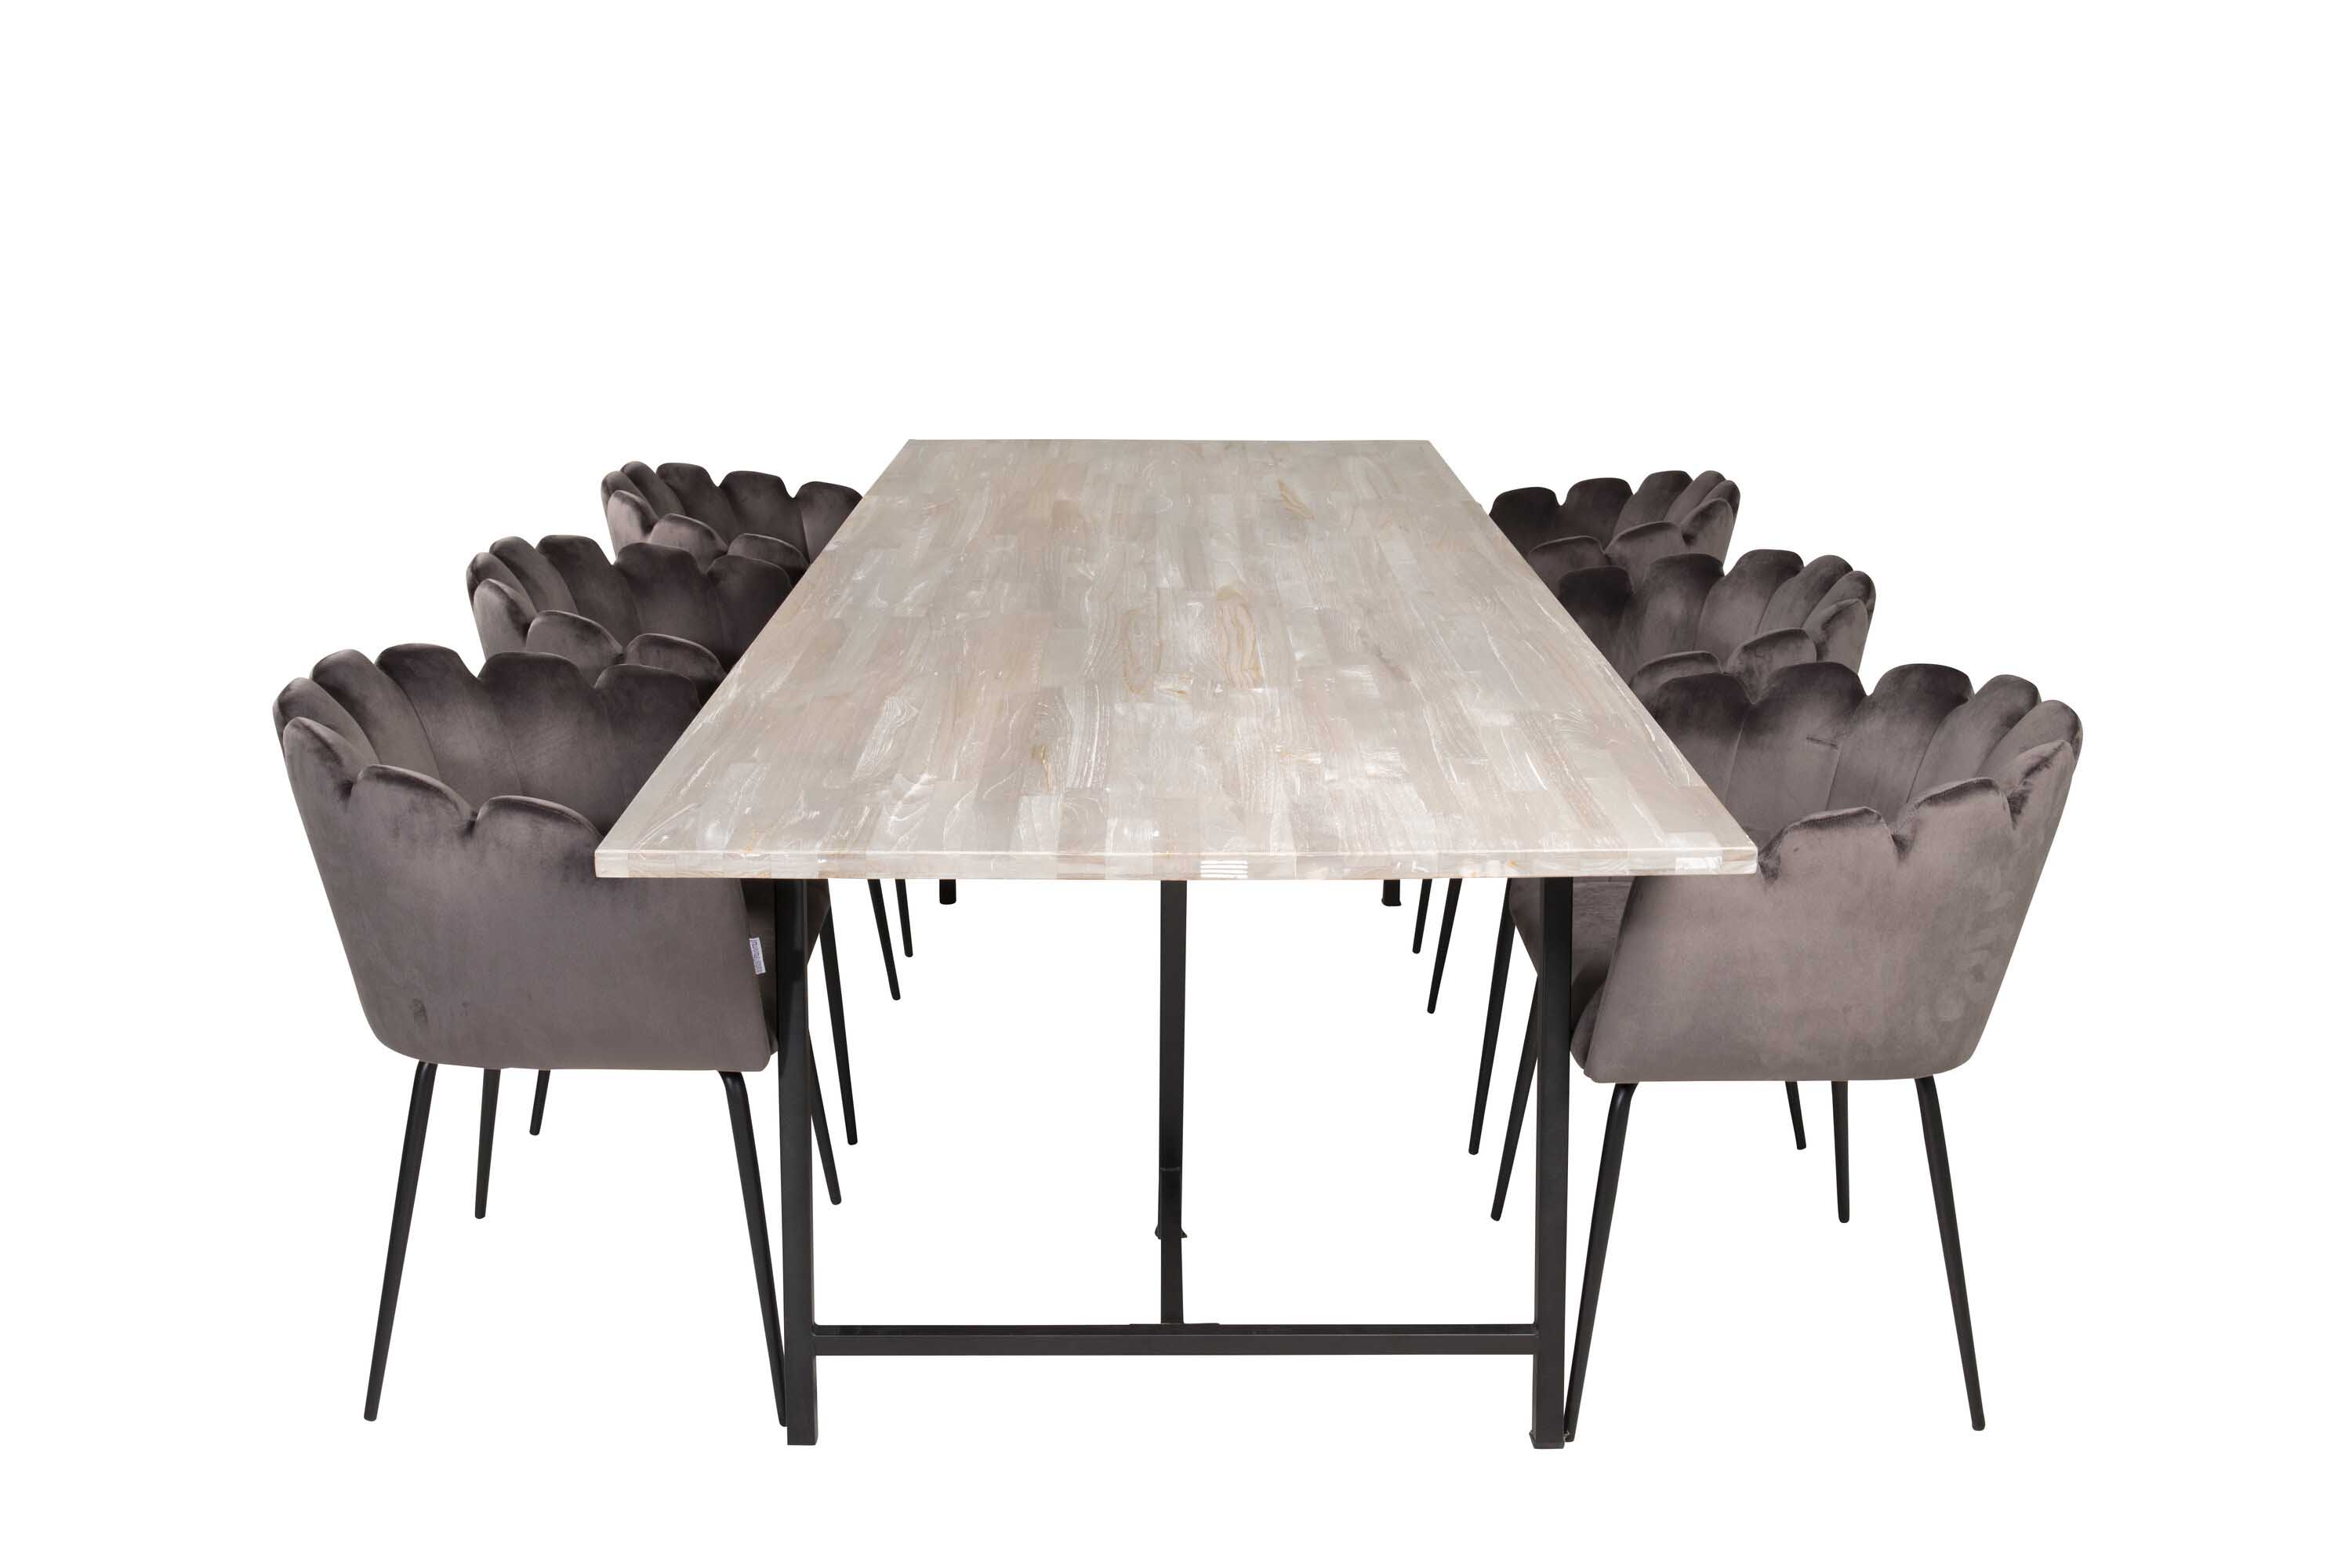 Venture Design Jepara & Limhamn spisegruppe Grå/grå 6 st stoler & bord 250 x 100 cm